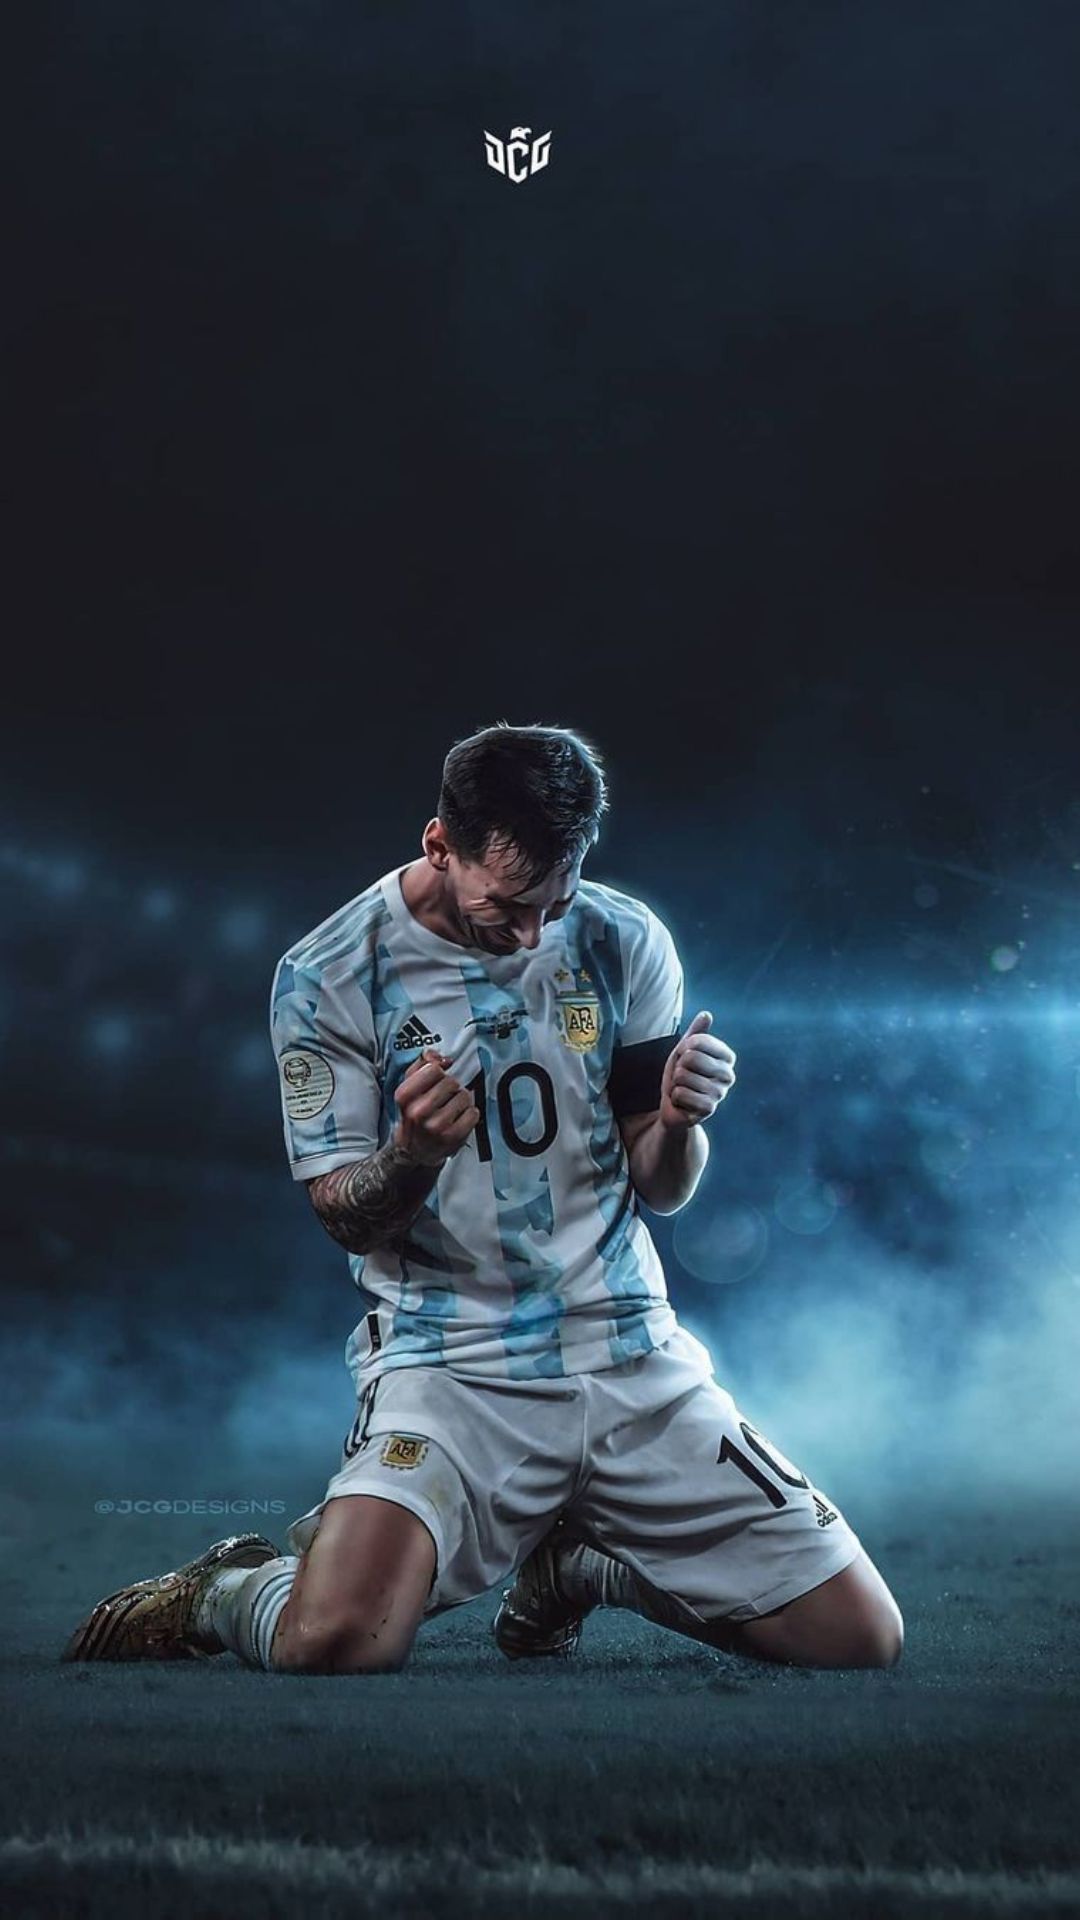 Hãy cập nhật ngay bộ sưu tập hình nền iPhone Argentina 2022 tuyệt đẹp để cổ vũ cho đội tuyển và thể hiện tình yêu đối với đất nước Argentina của bạn.